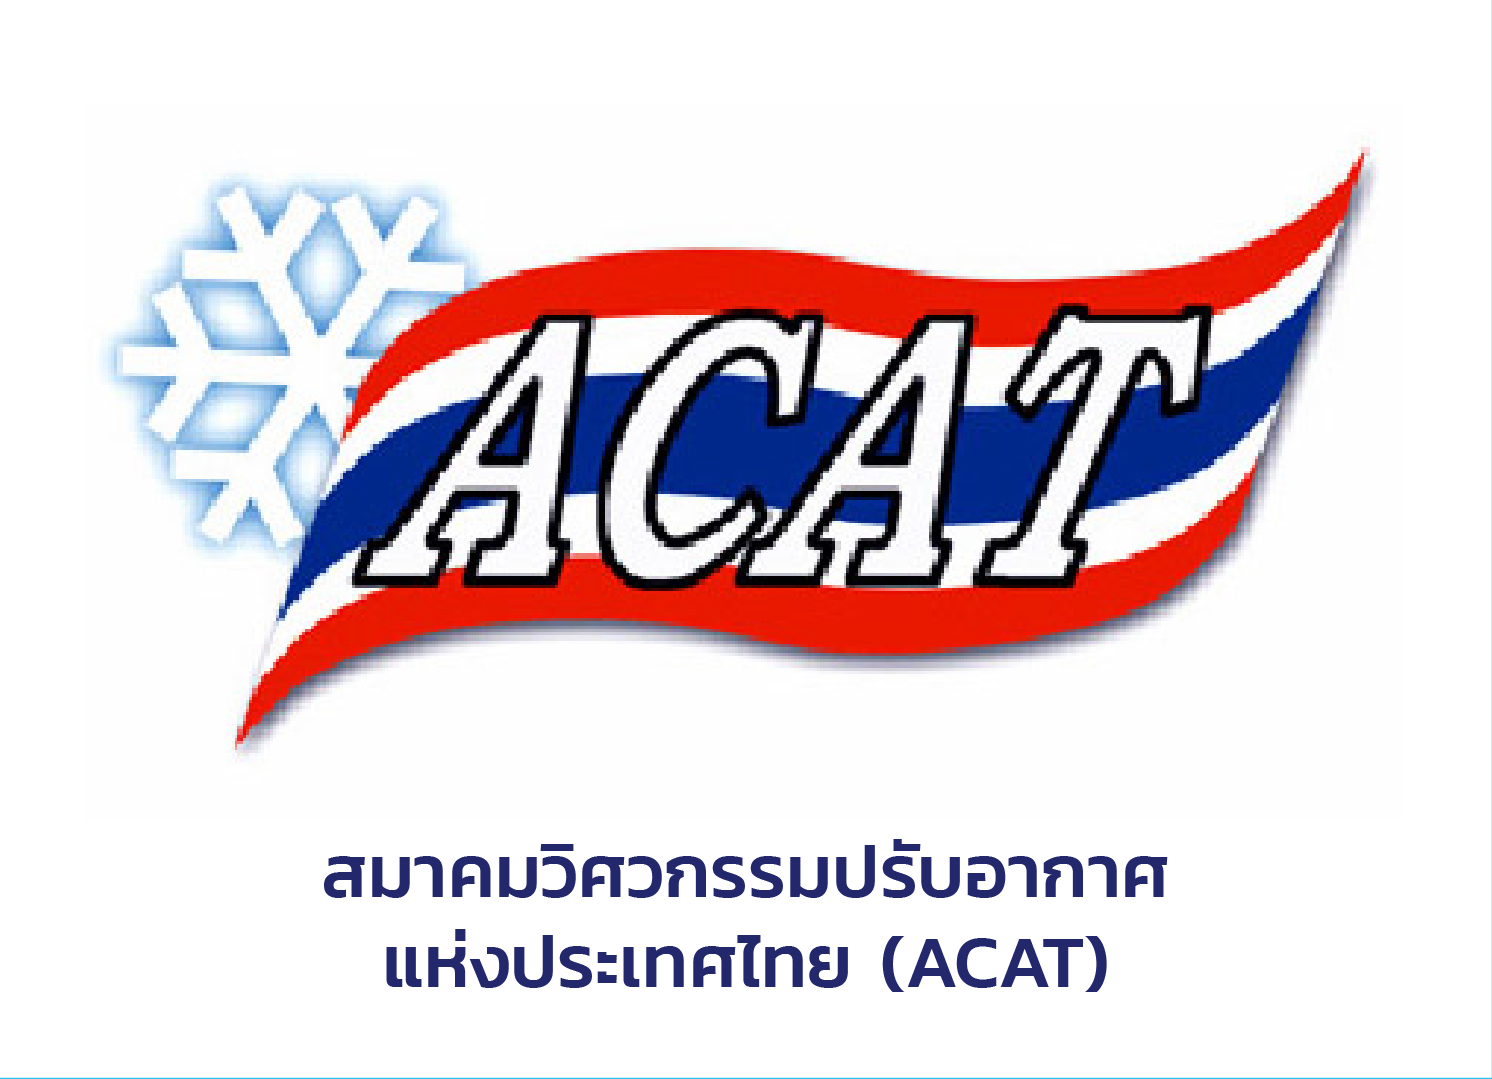 สมาคมวิศวกรรมปรับอากาศแห่งประเทศไทย (ACAT)